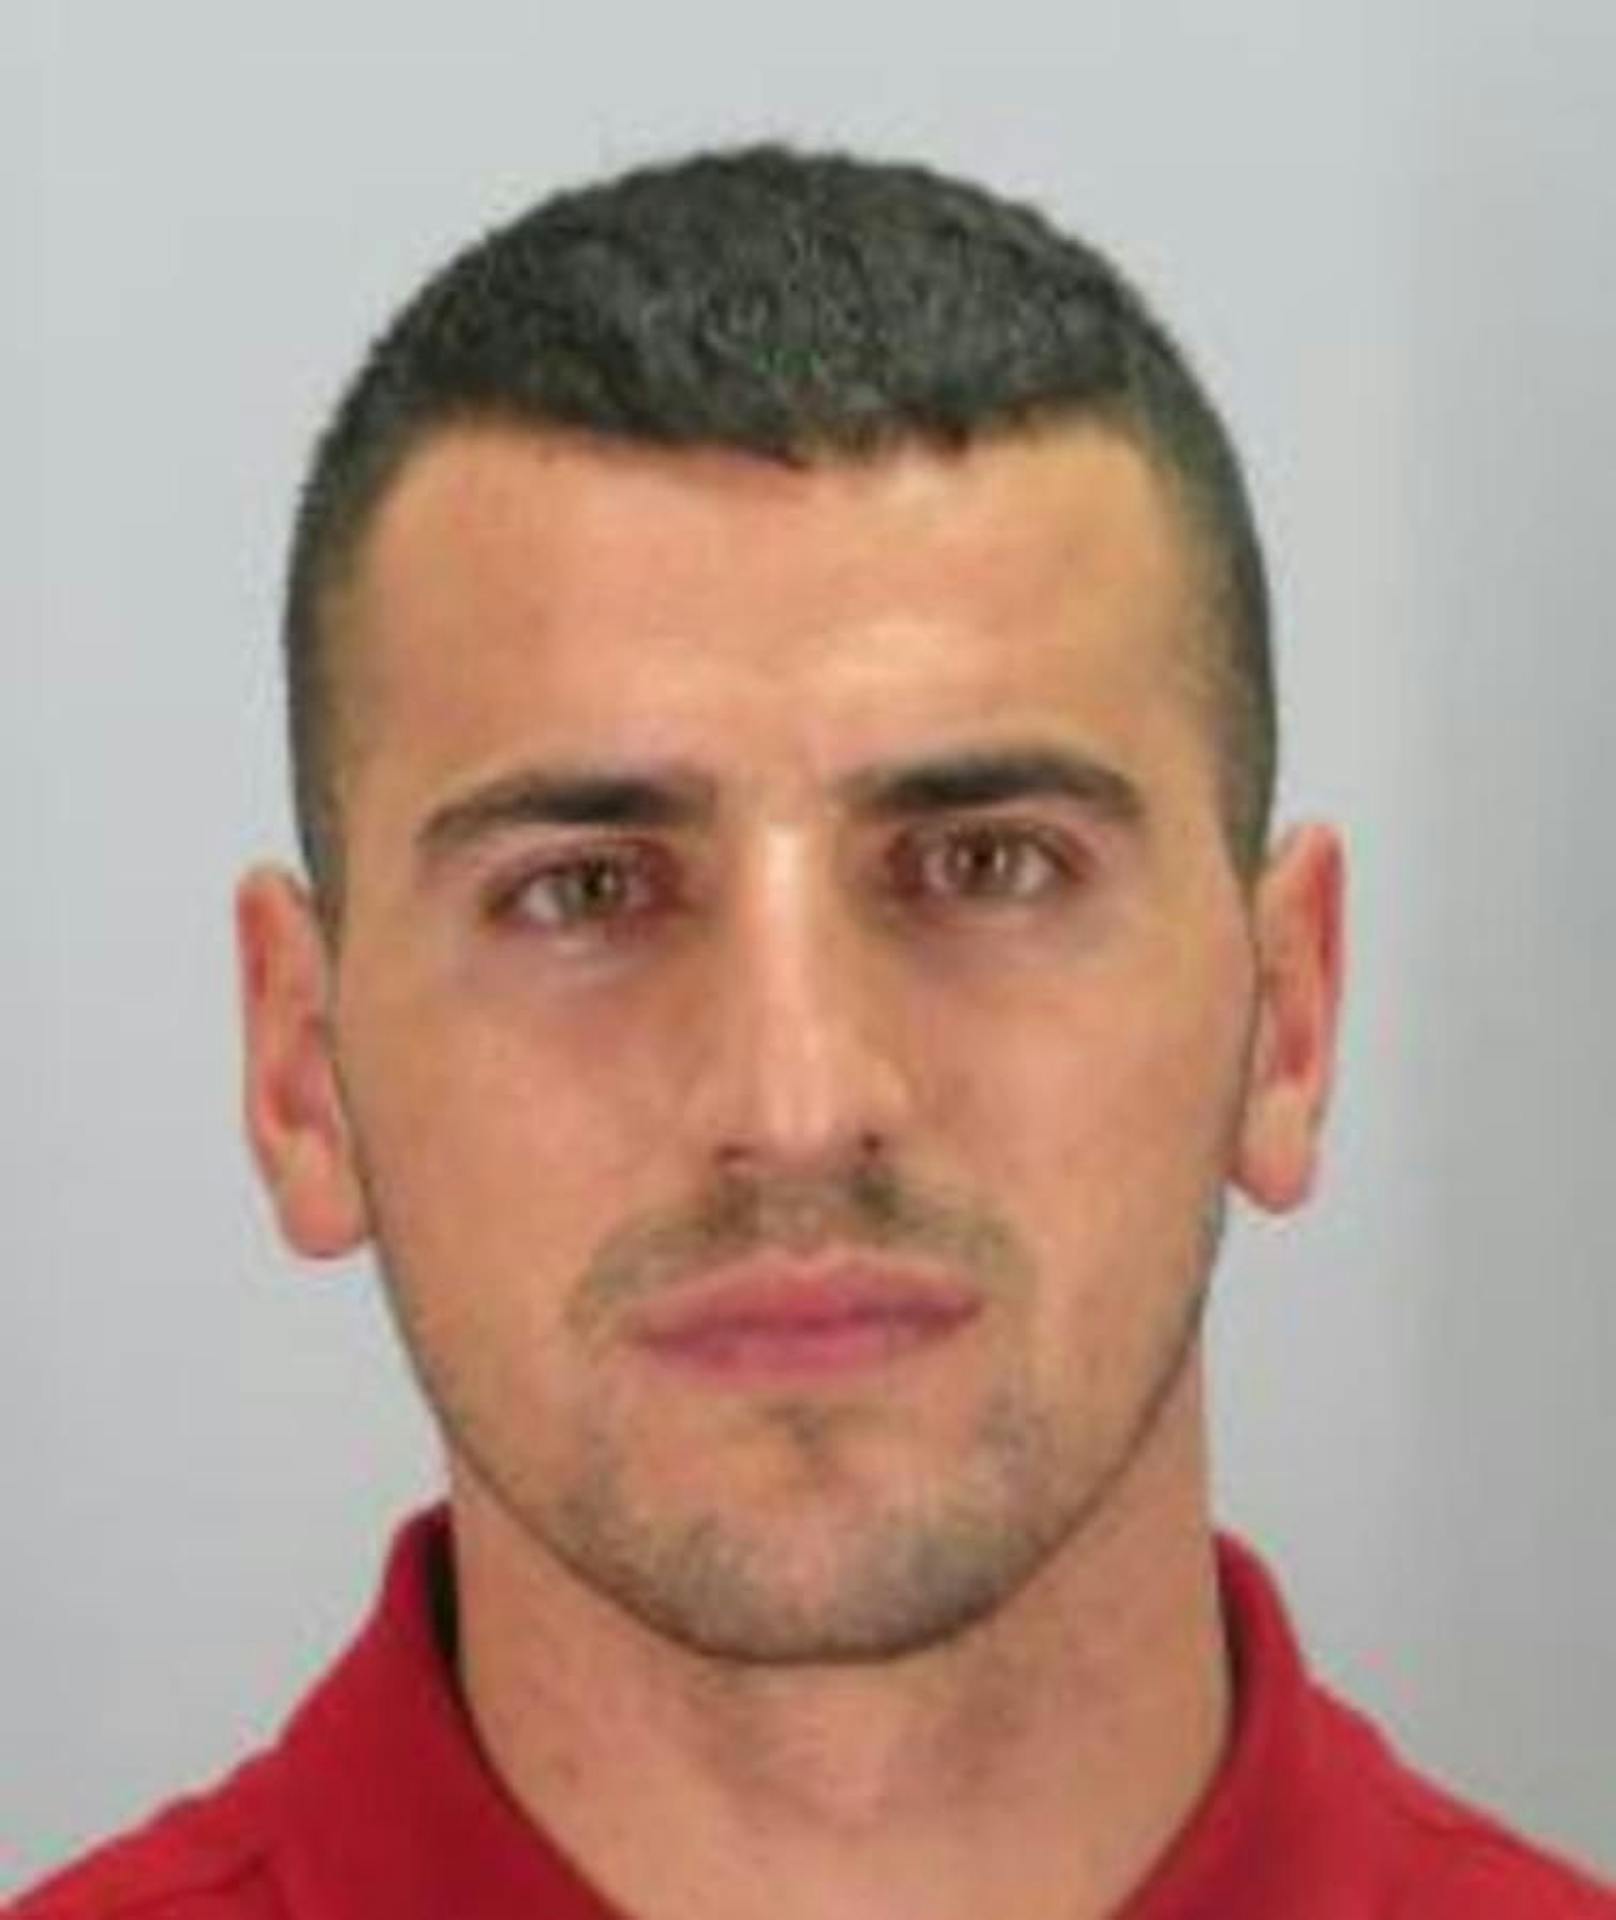 Mekail Ademi (28), Beschreibung laut Polizei: "ca. 184 cm, ca. 70 kg, hager. Hakennase, Geheimratsecken, braune Augen, Bart, Kleidung unbekannt"